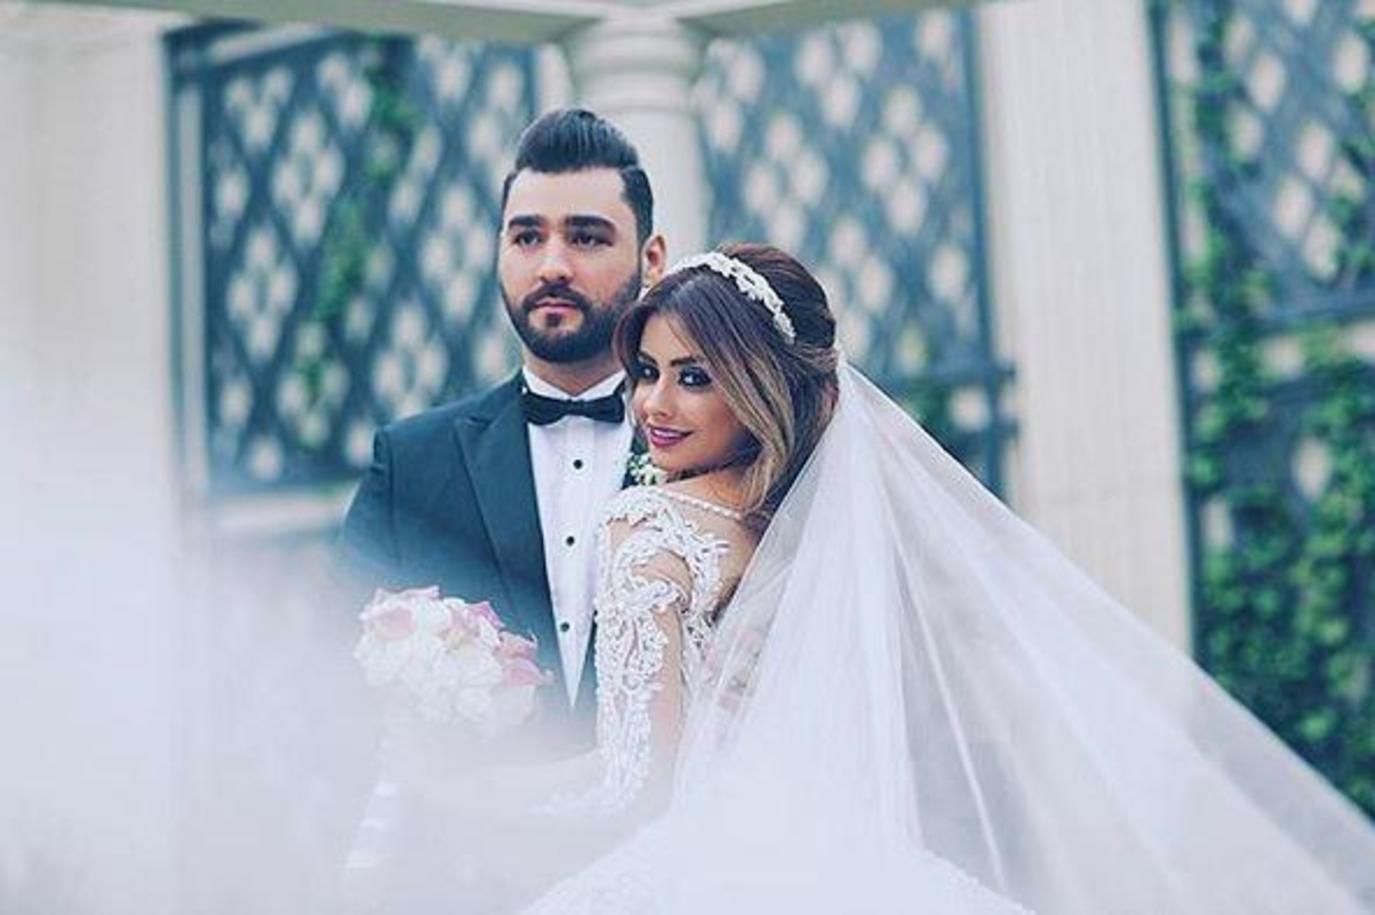 صورة من هو مروان النعماني زوج شهد الجميلي